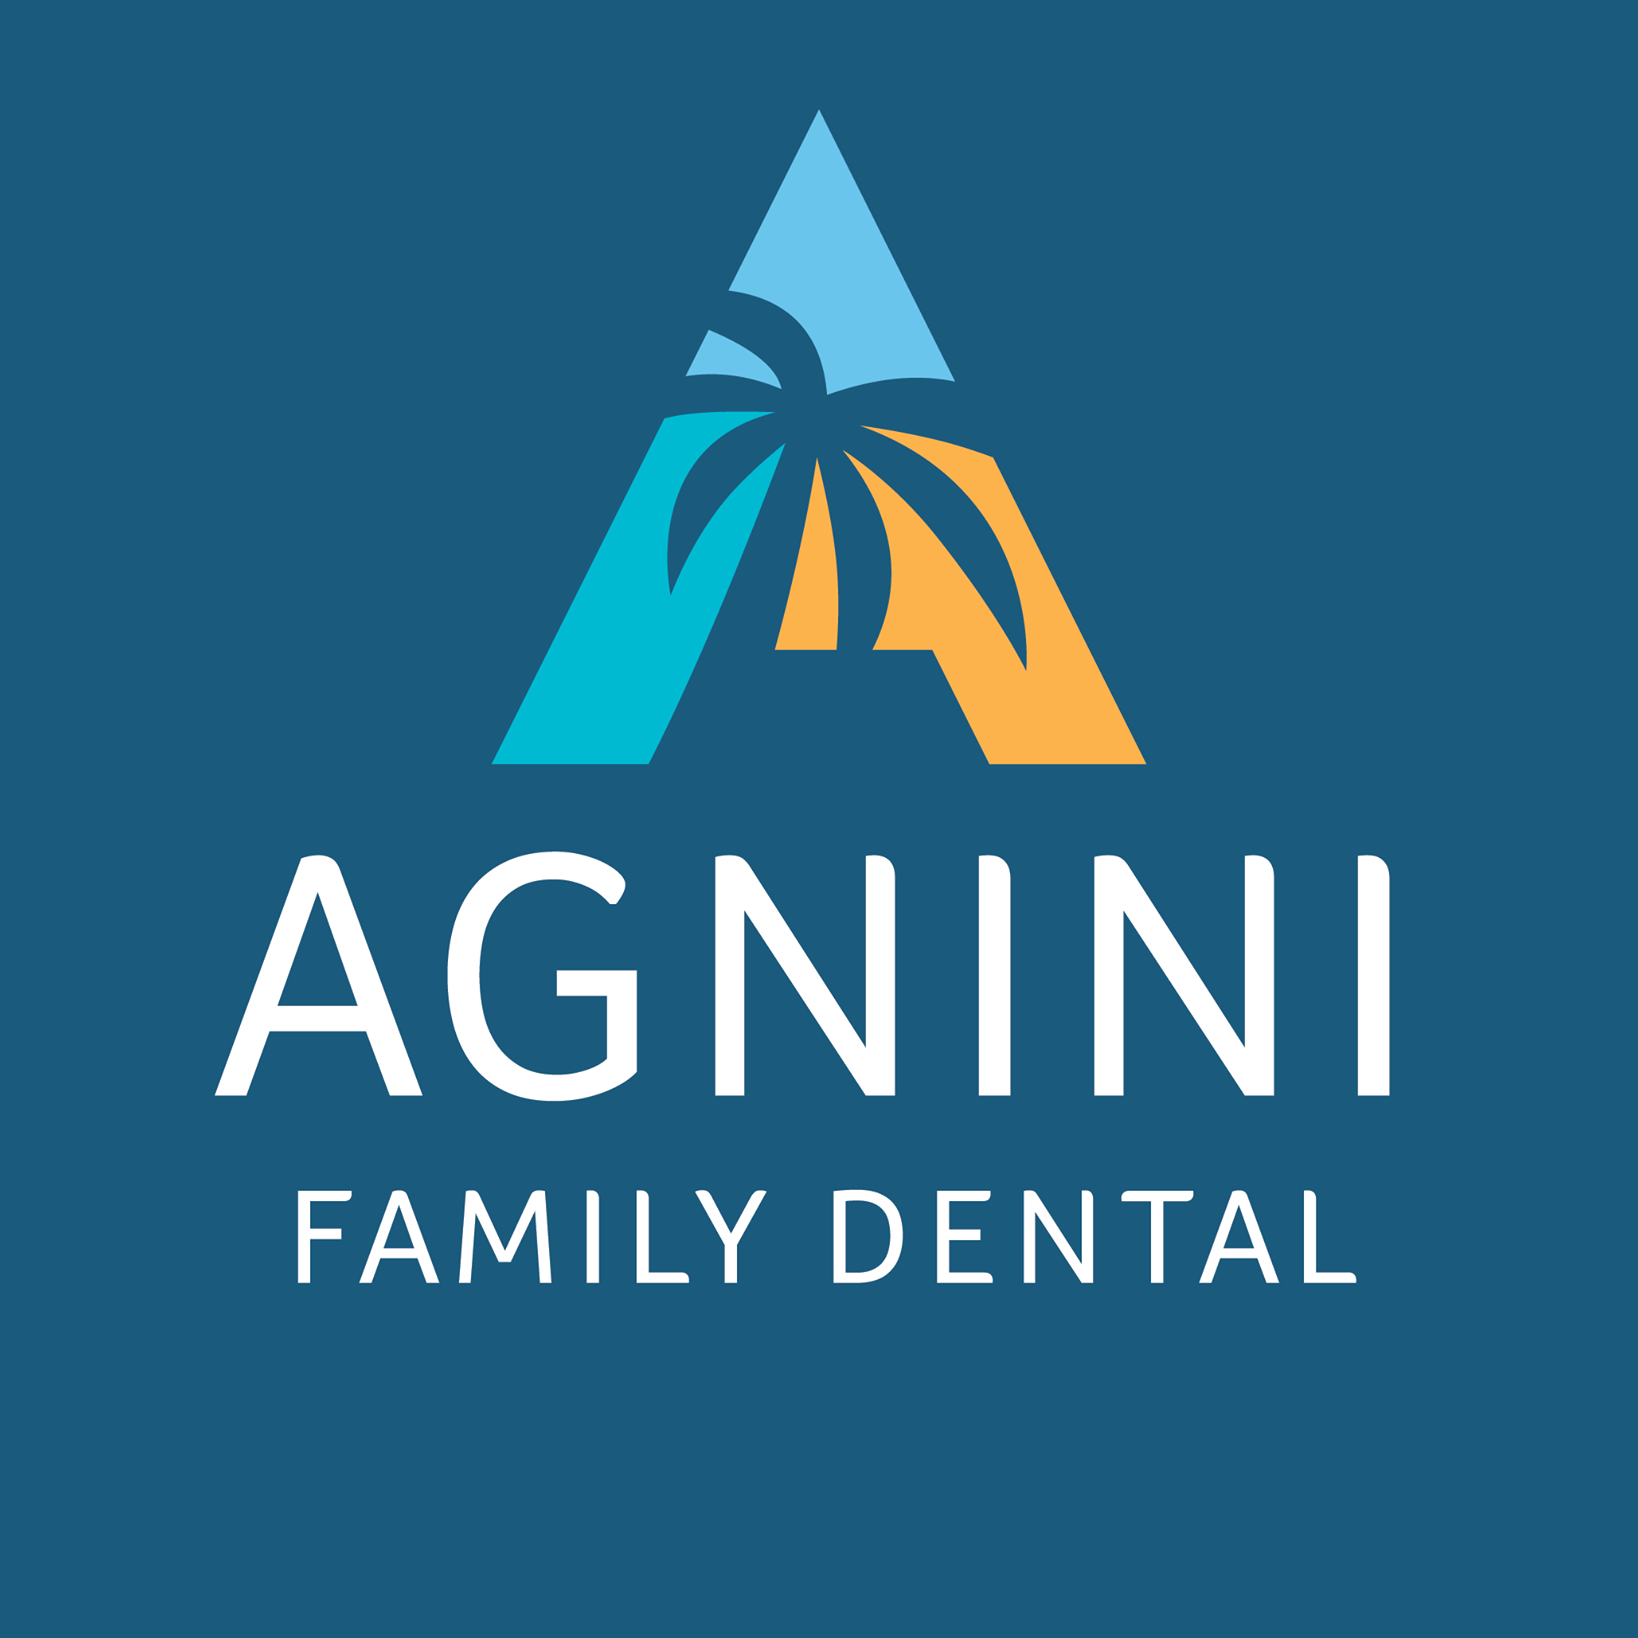 Company logo of Agnini Family Dental